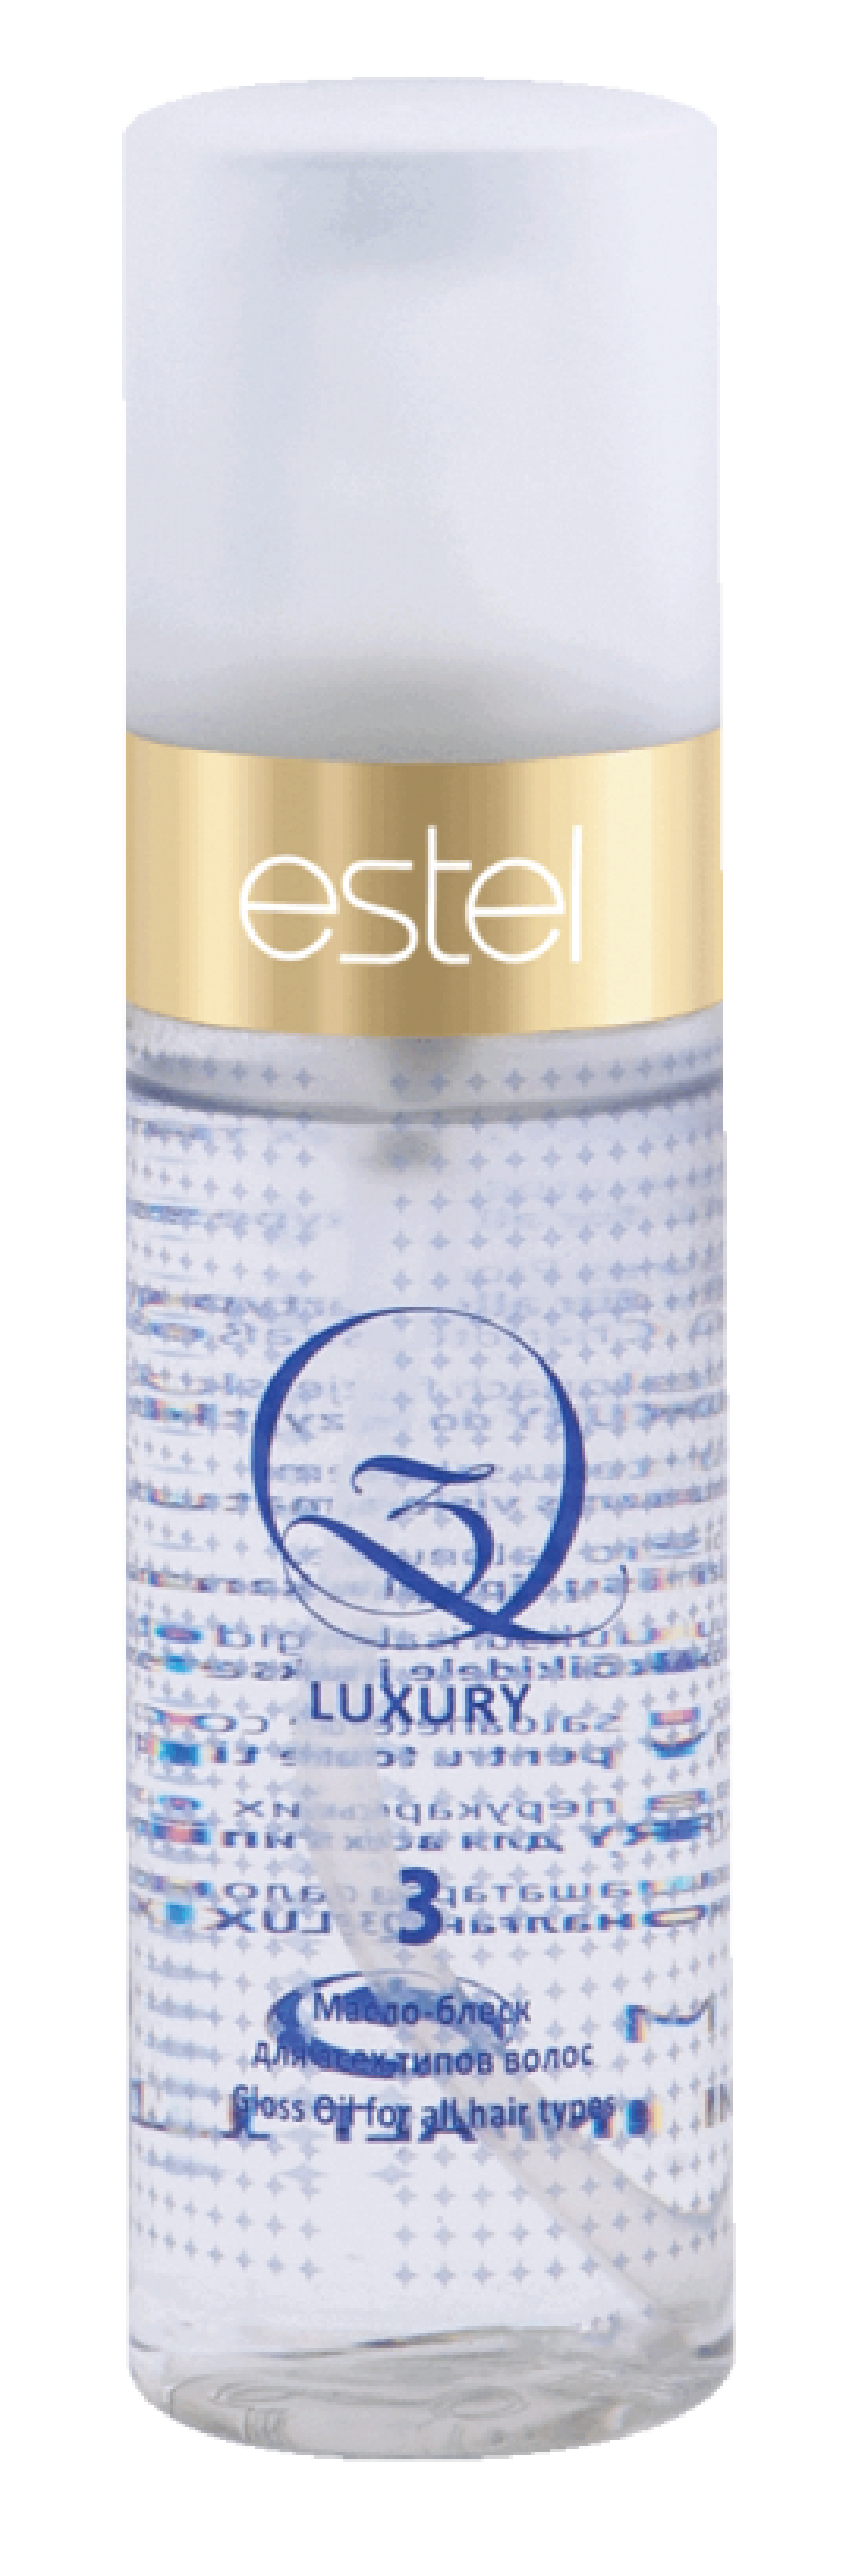 ESTEL PROFESSIONAL Масло-блеск для всех типов волос / Q3 150 мл